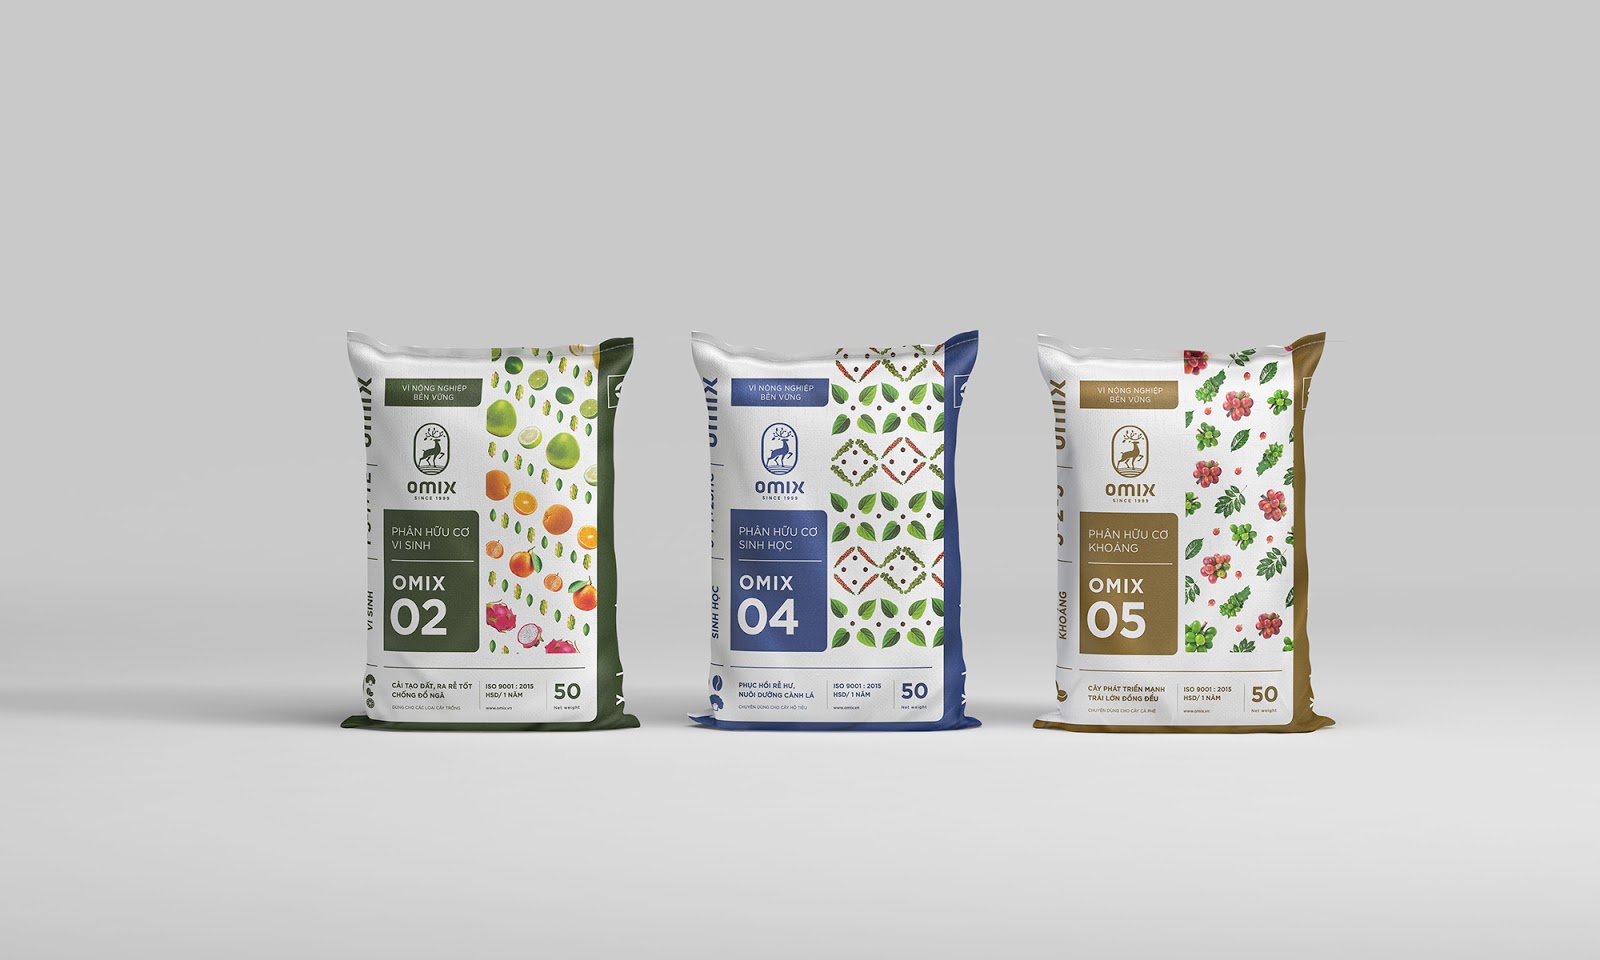 肥料包装设计西安四喜品牌包装设计